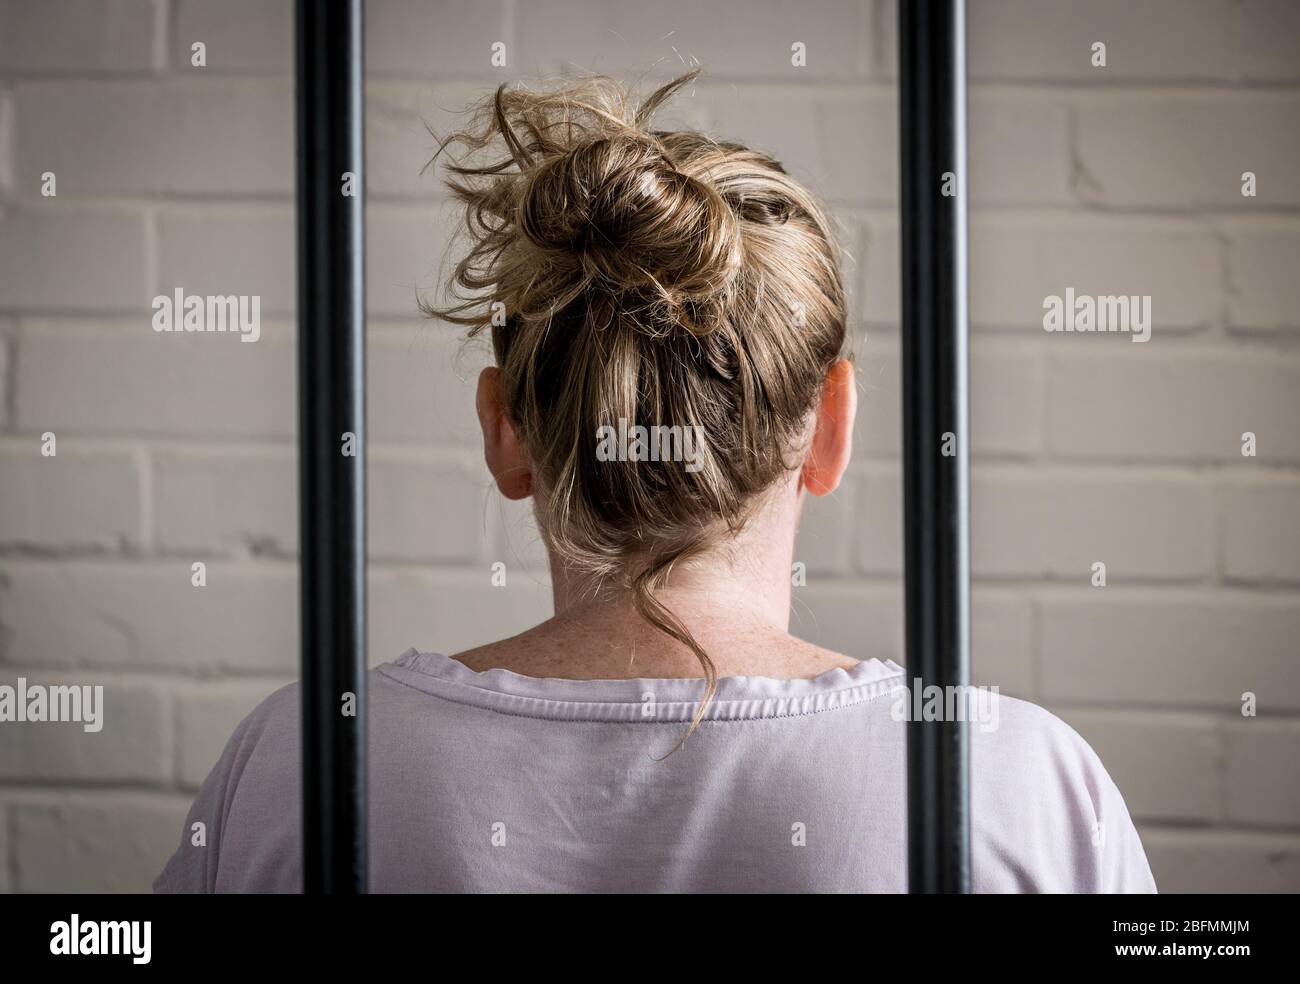 Una prisionera femenina detrás de las rejas en una prisión de mujeres. Imagen planteada por el modelo. Foto de stock